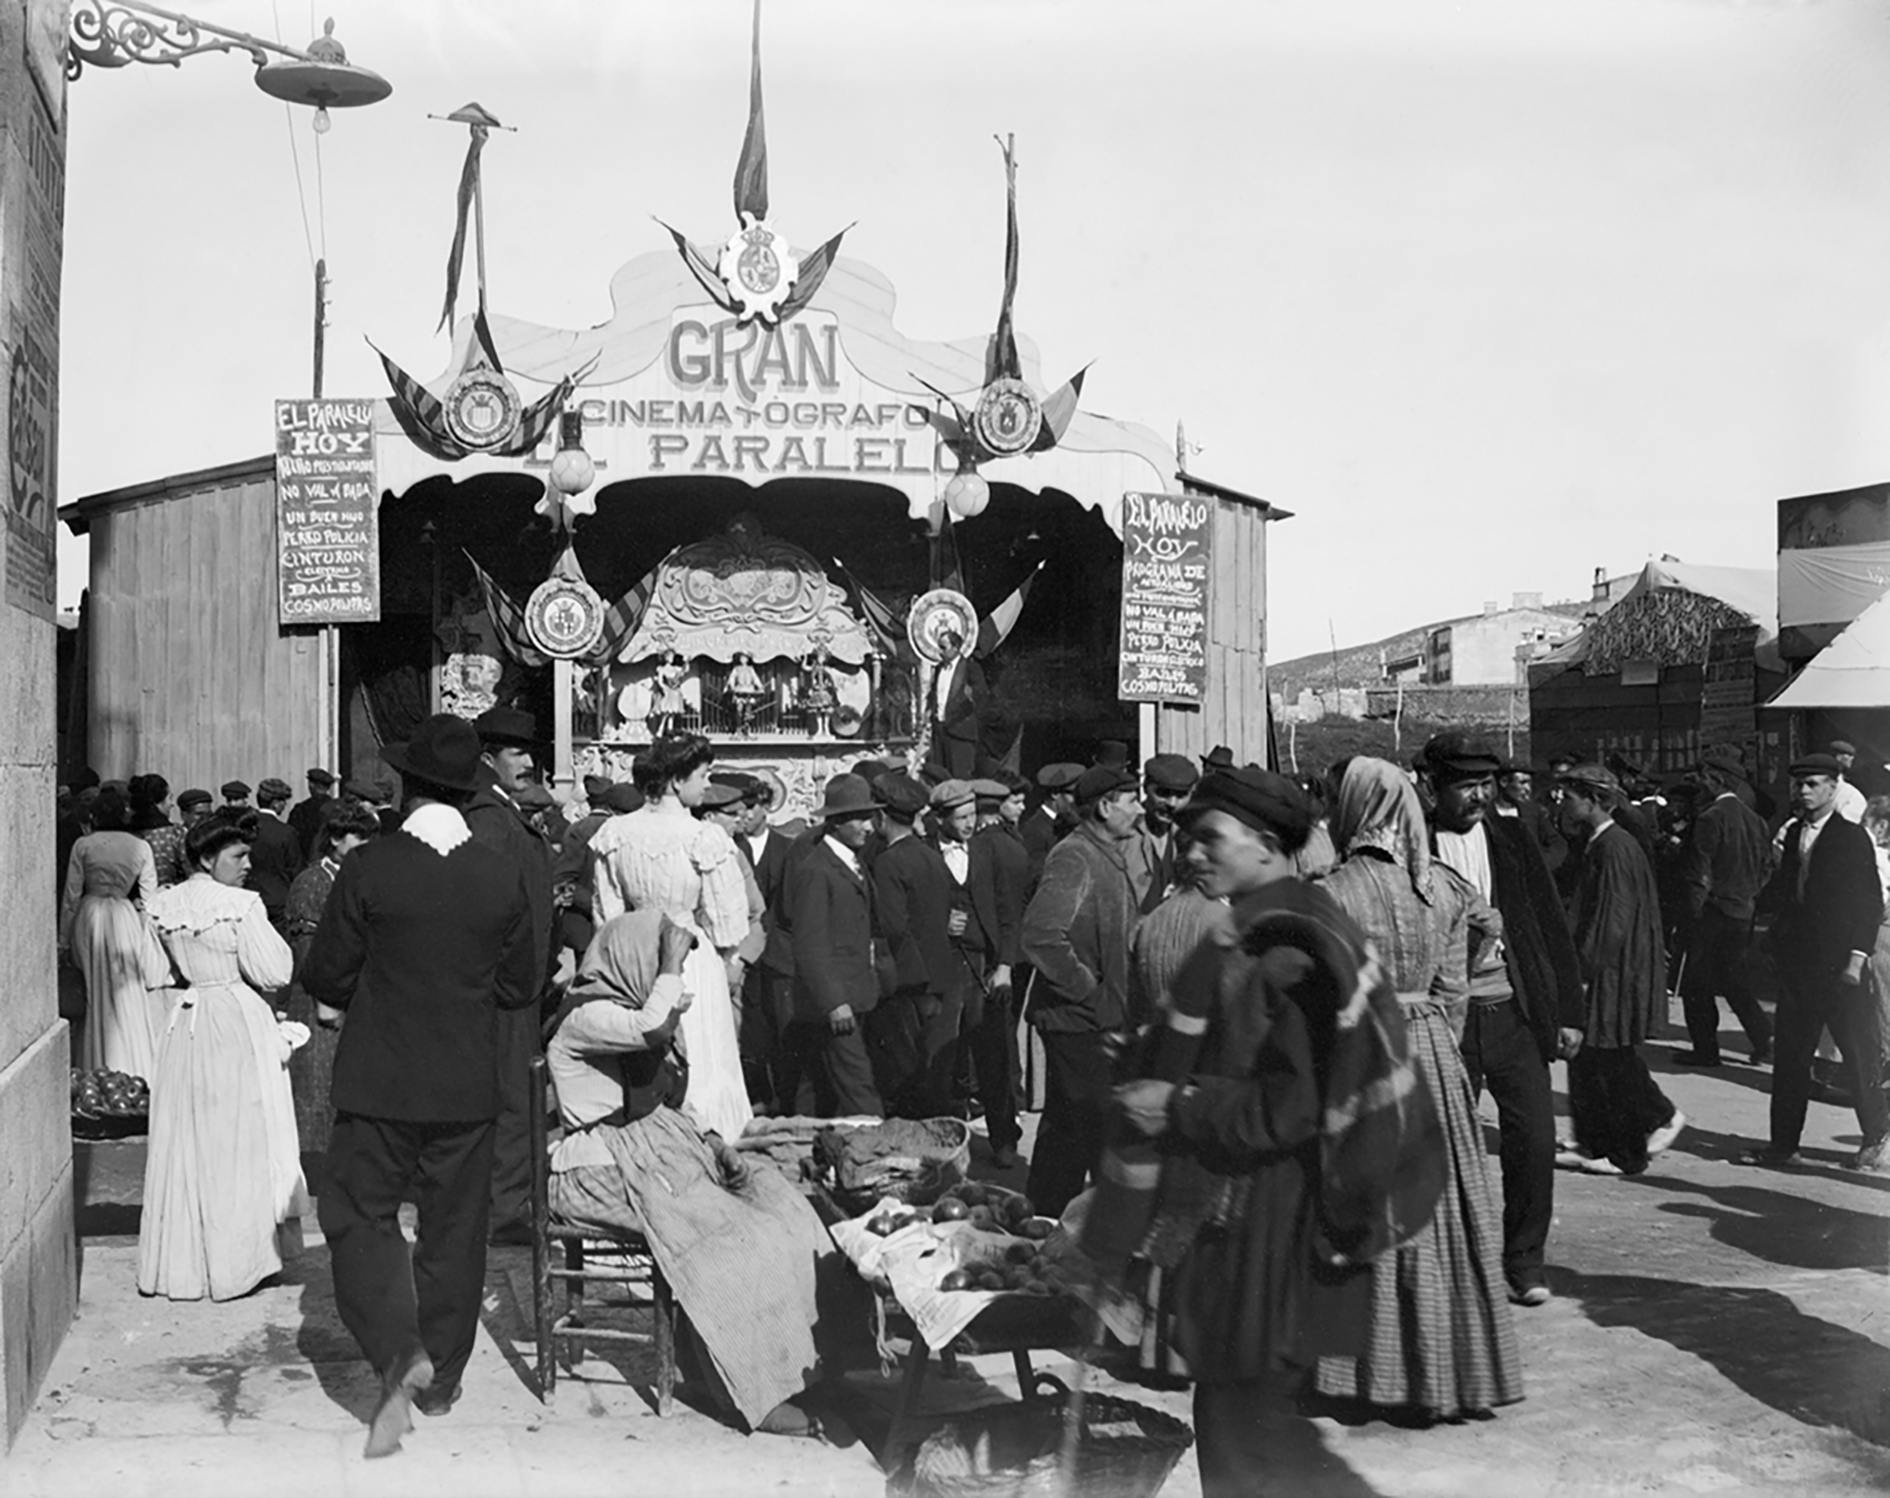 La barraca ambulant del Gran Cinematógrafo Paralelo, cap al 1900 (font: AFCEC, Lluís Girau Iglesias).